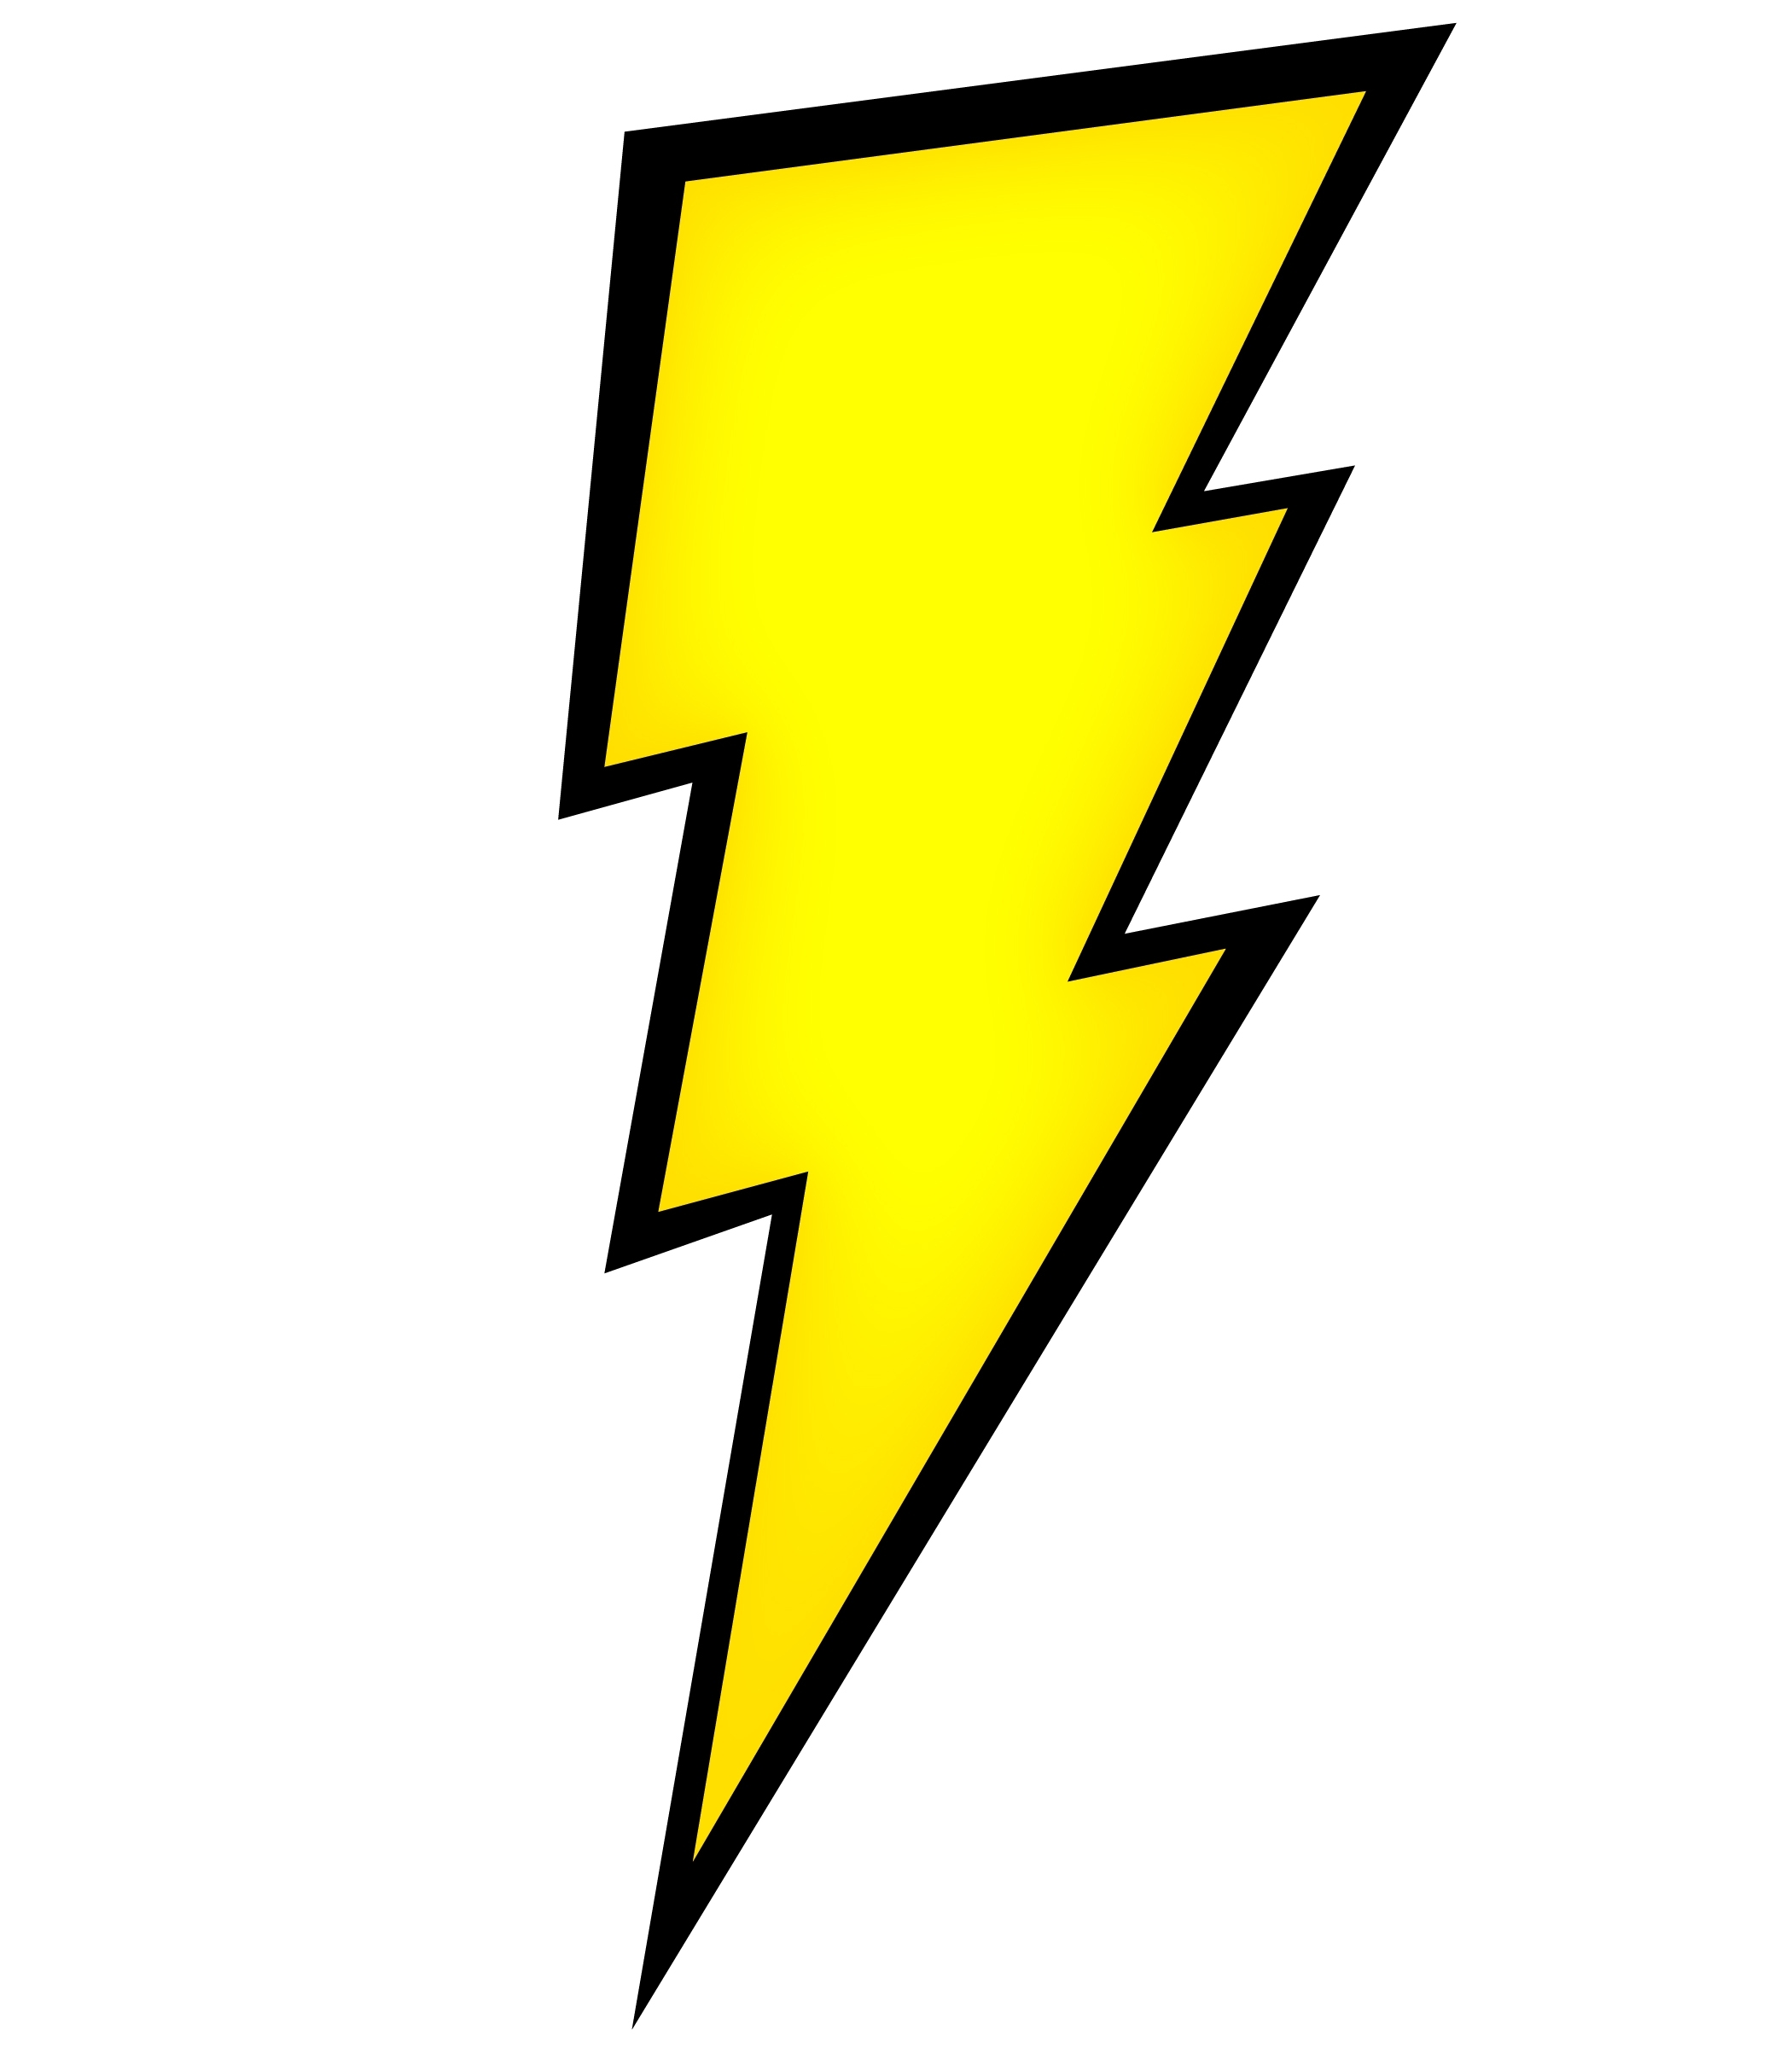 Zeus Lightning Bolt images & pictures - NearPics